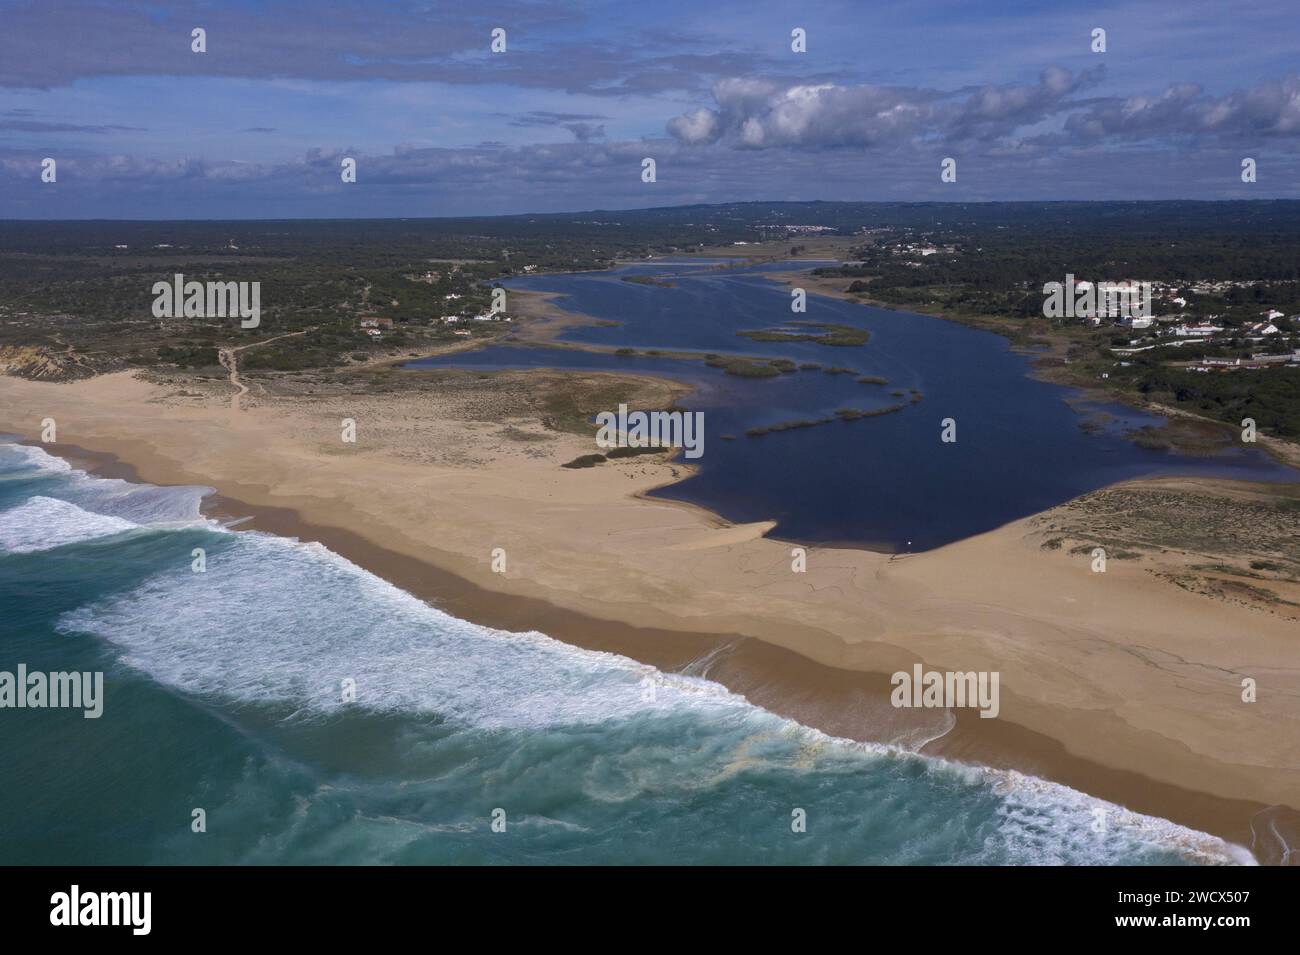 Portugal, Alentejo, Melides, lagune Melides s'arrêtant devant une longue plage de sable fin au bord de l'océan Atlantique (vue aérienne) Banque D'Images